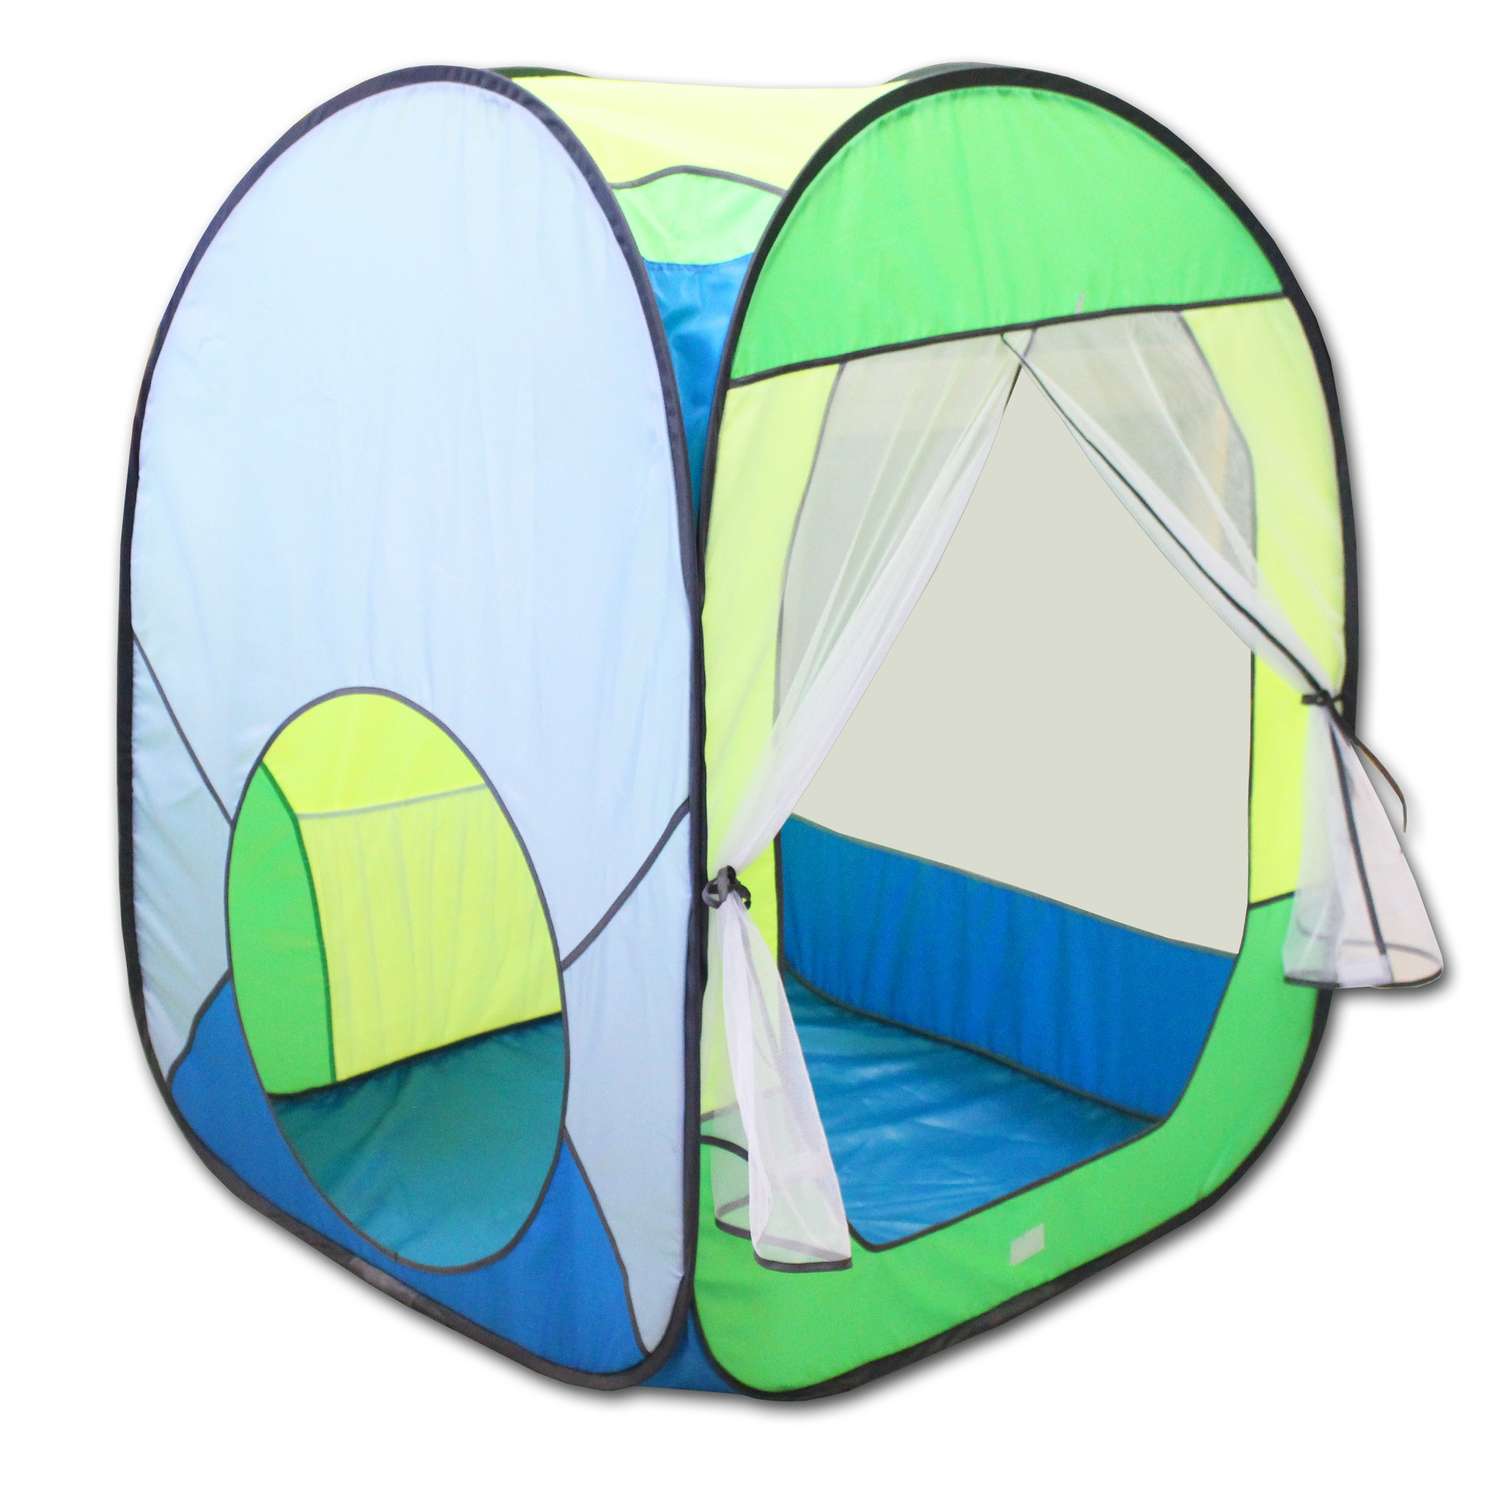 Палатка игровая Belon familia Радужный домик Цвет яркий голубой/салатовый/лимон/бирюза Размеры 85х85х105 см - фото 1